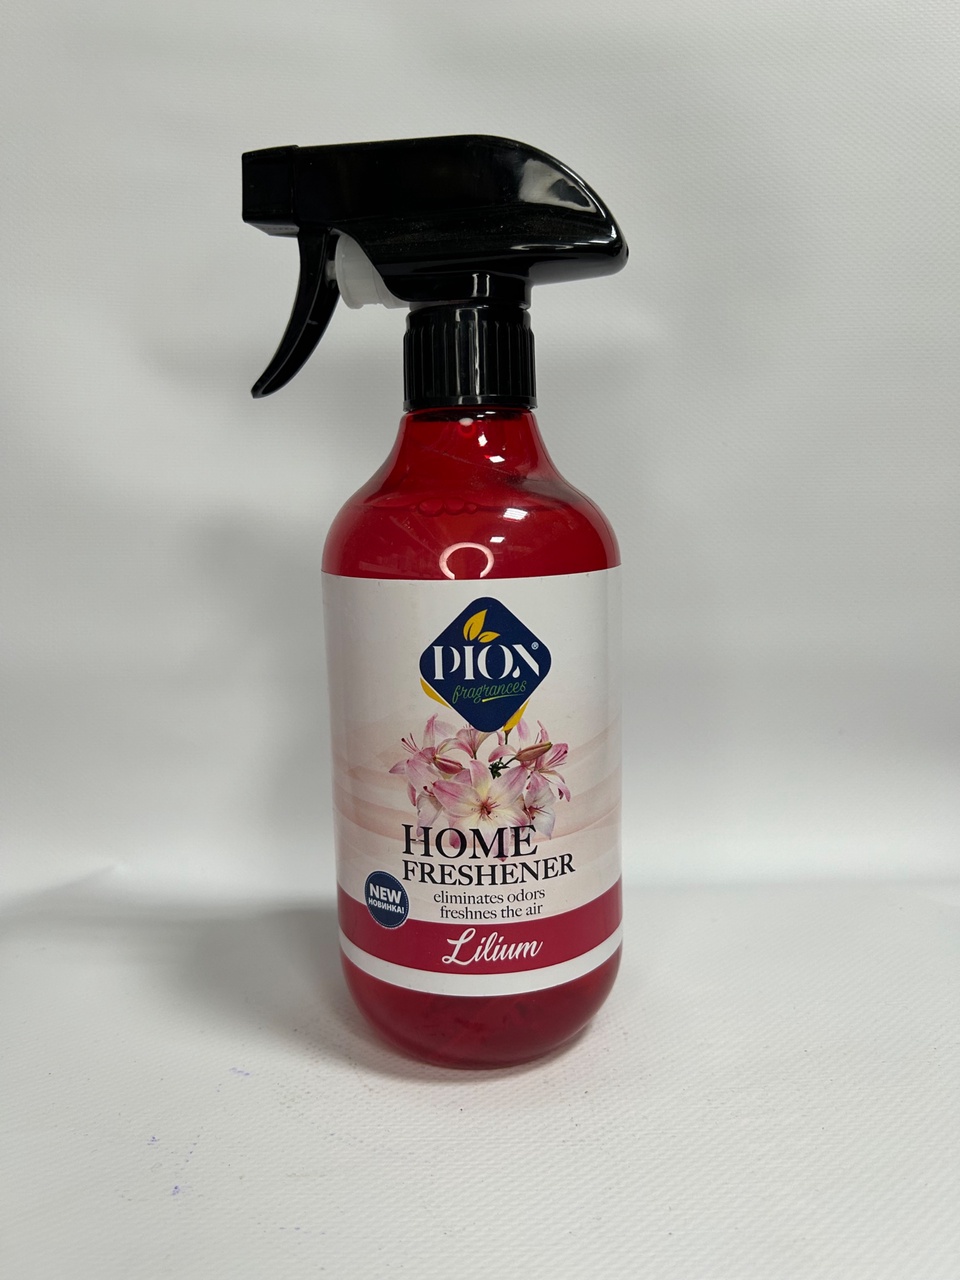 Спрей освежитель Diox с ароматом «Лилия» - 250 ₽, заказать онлайн.